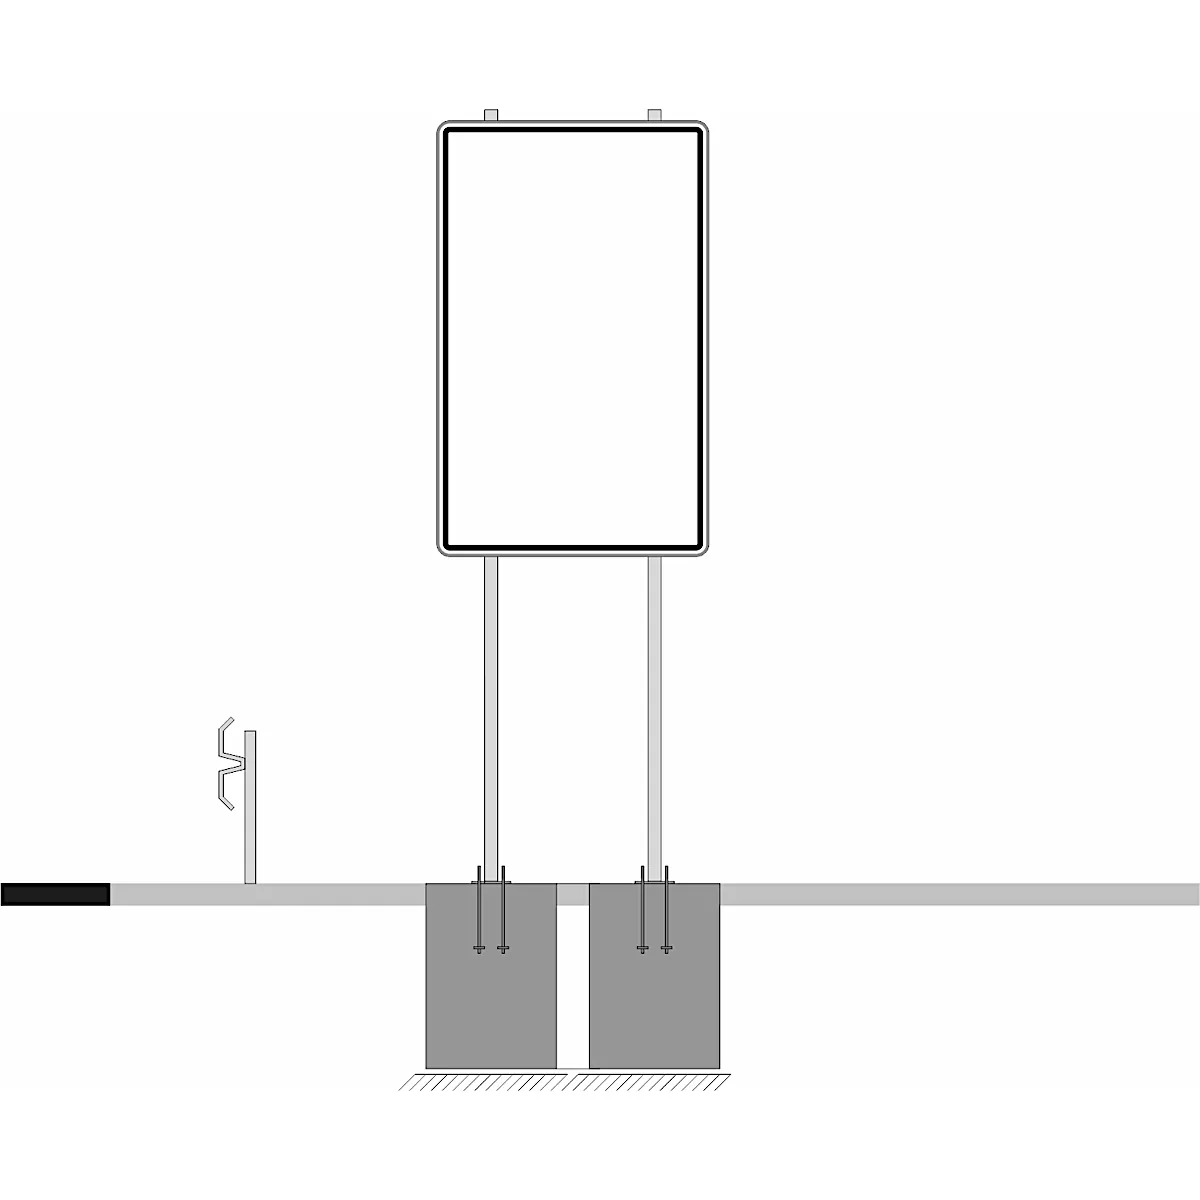 Plakattafel-set aus Dibond Traffic, weiß, 1600 x 1250 mm, inkl. 4 Klemmschellen mit 2 Rohrpfosten L. 3000 x 76 mm und 2 Bodenhülse